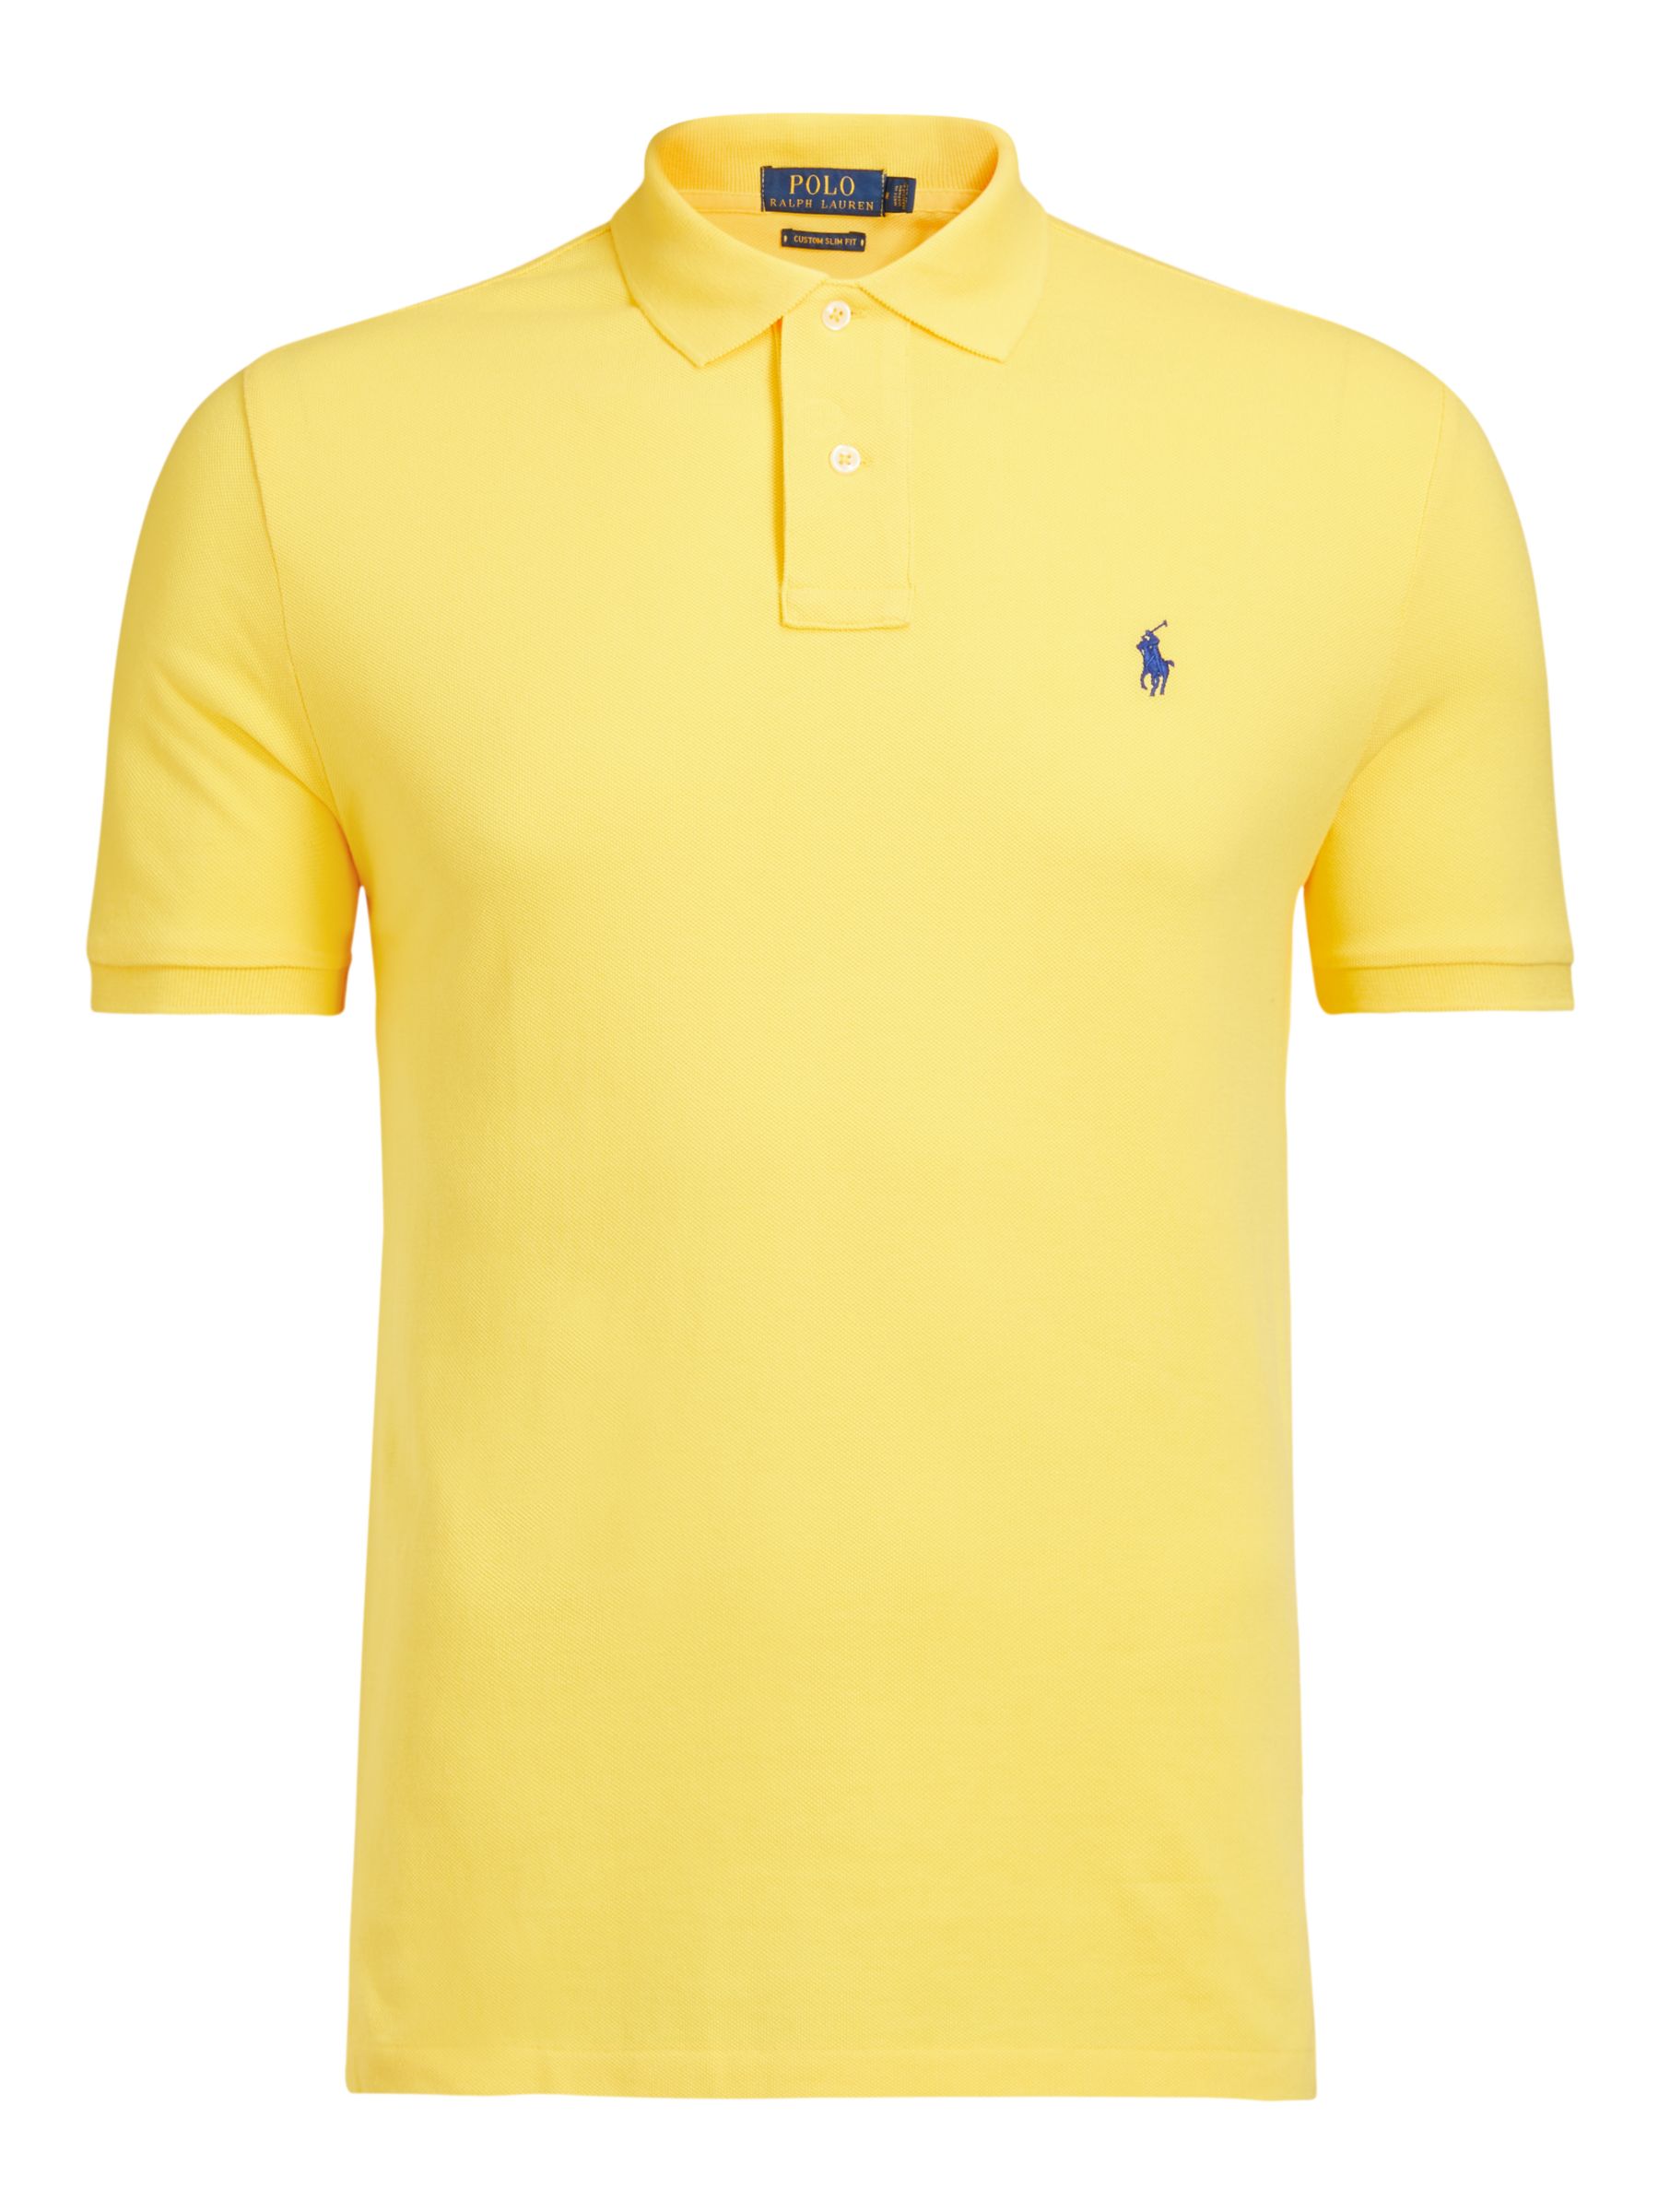 mens yellow ralph lauren shirt